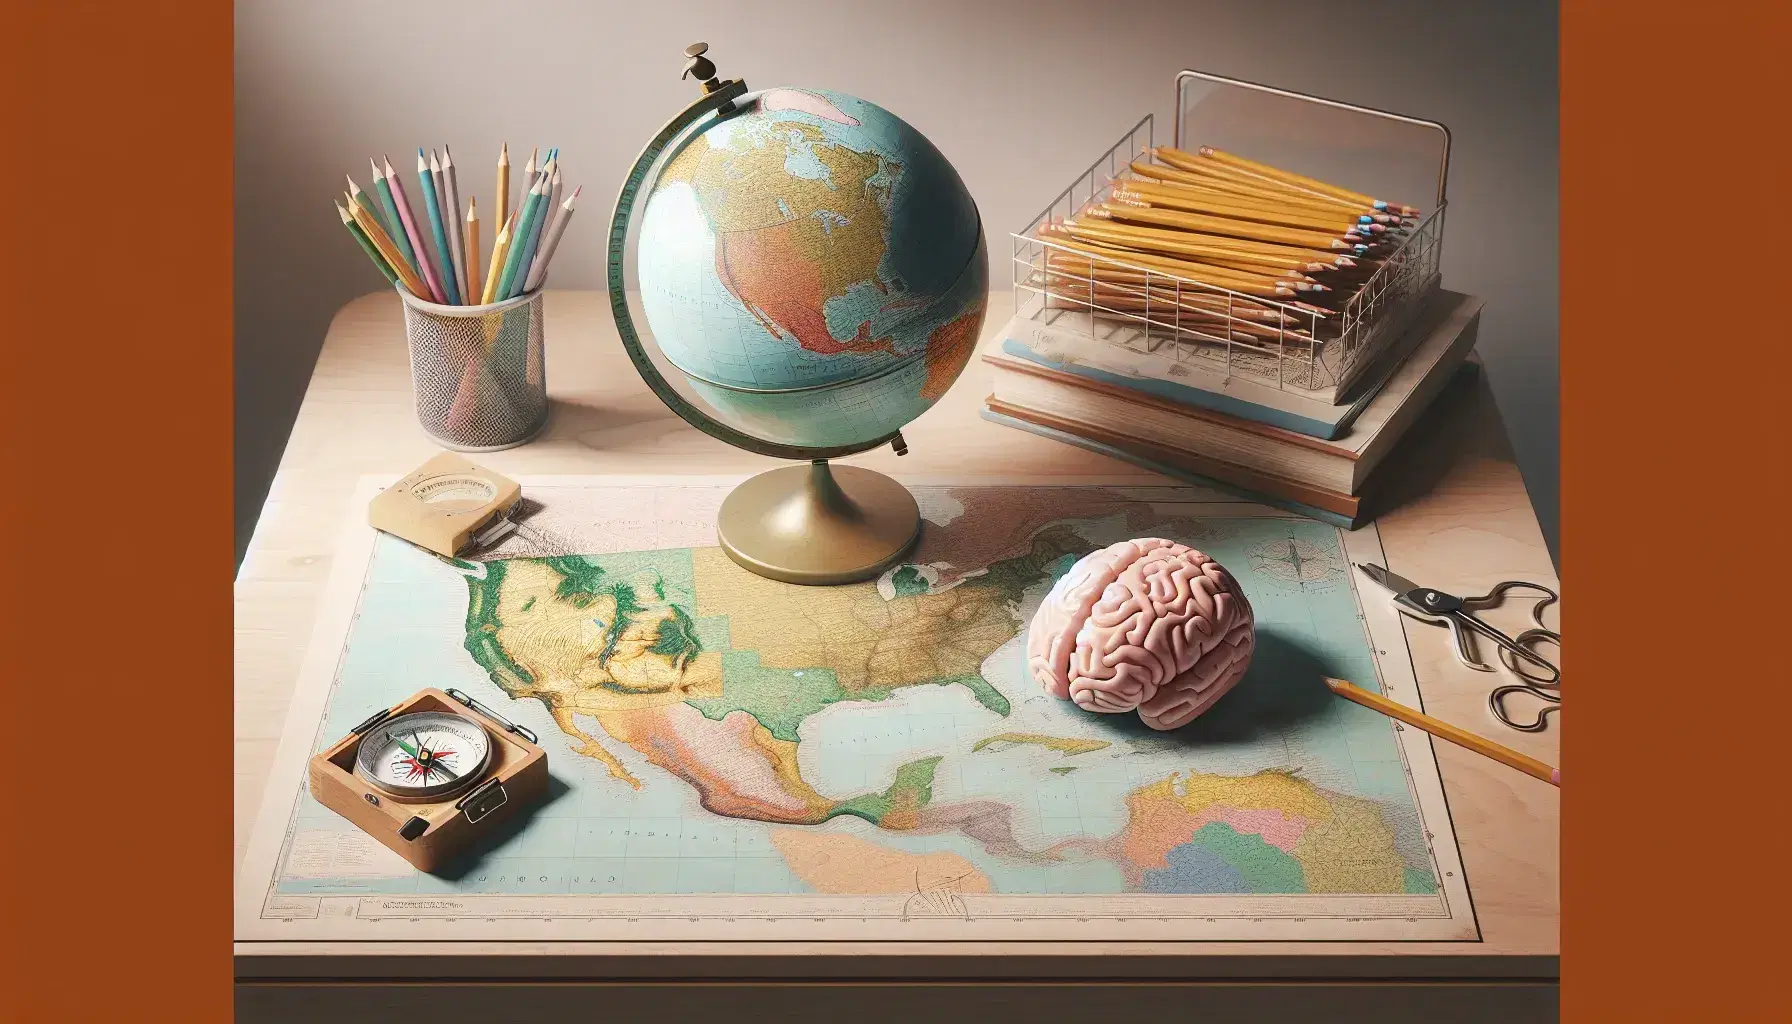 Mappa geografica colorata su scrivania in legno chiaro con bussola, mappamondo e modello 3D cervello umano, matite colorate sparse.